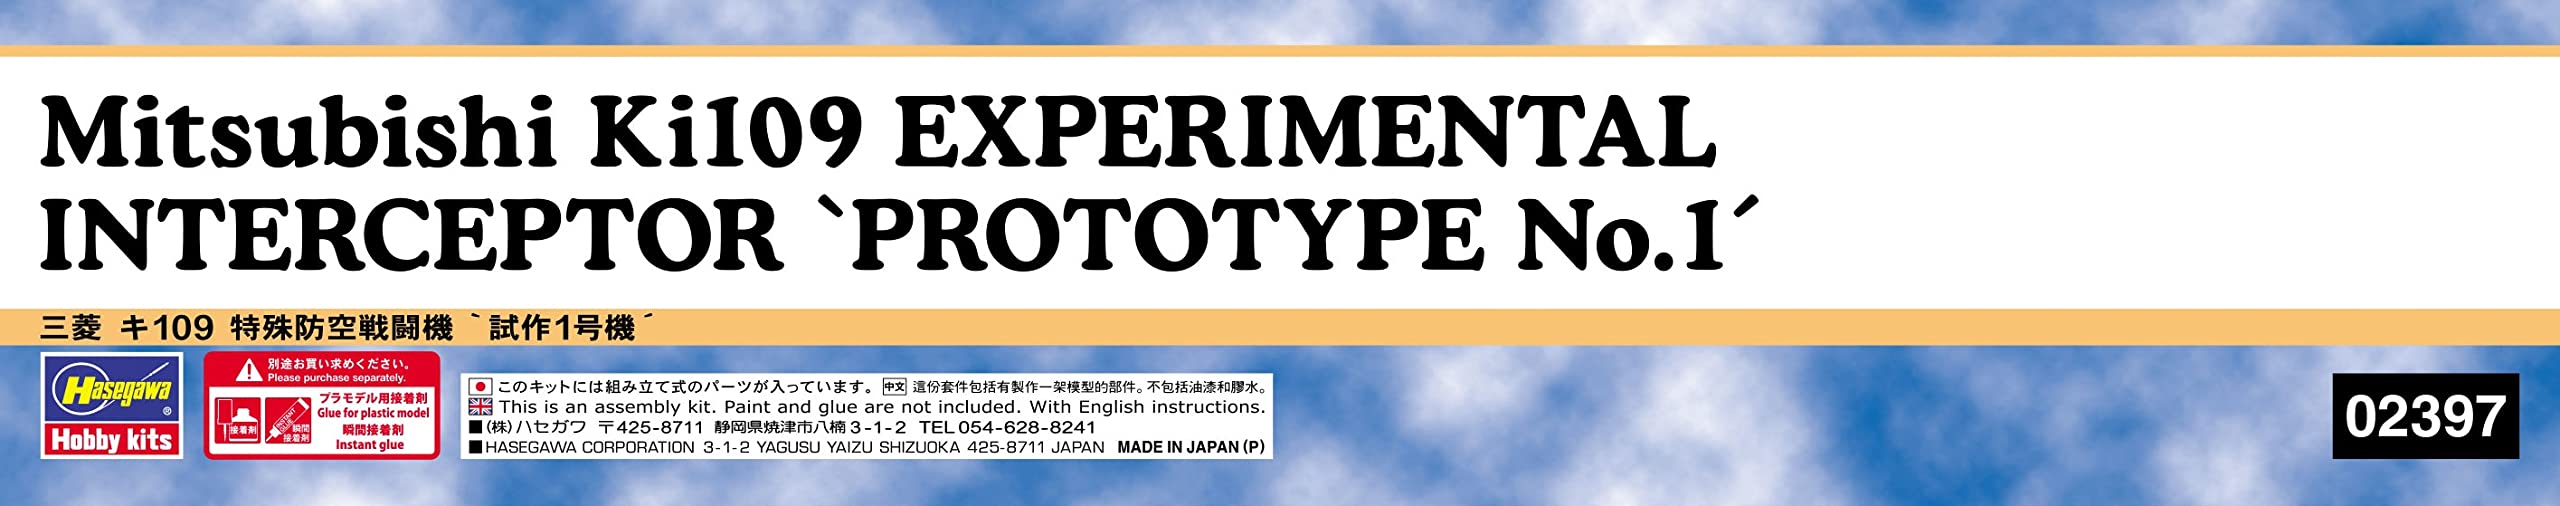 Hasegawa 1/72 Mitsubishi Ki109 EXPERIMENTAL INTERCEPTOR PROTOTYPE No.1 Kit 02397_4